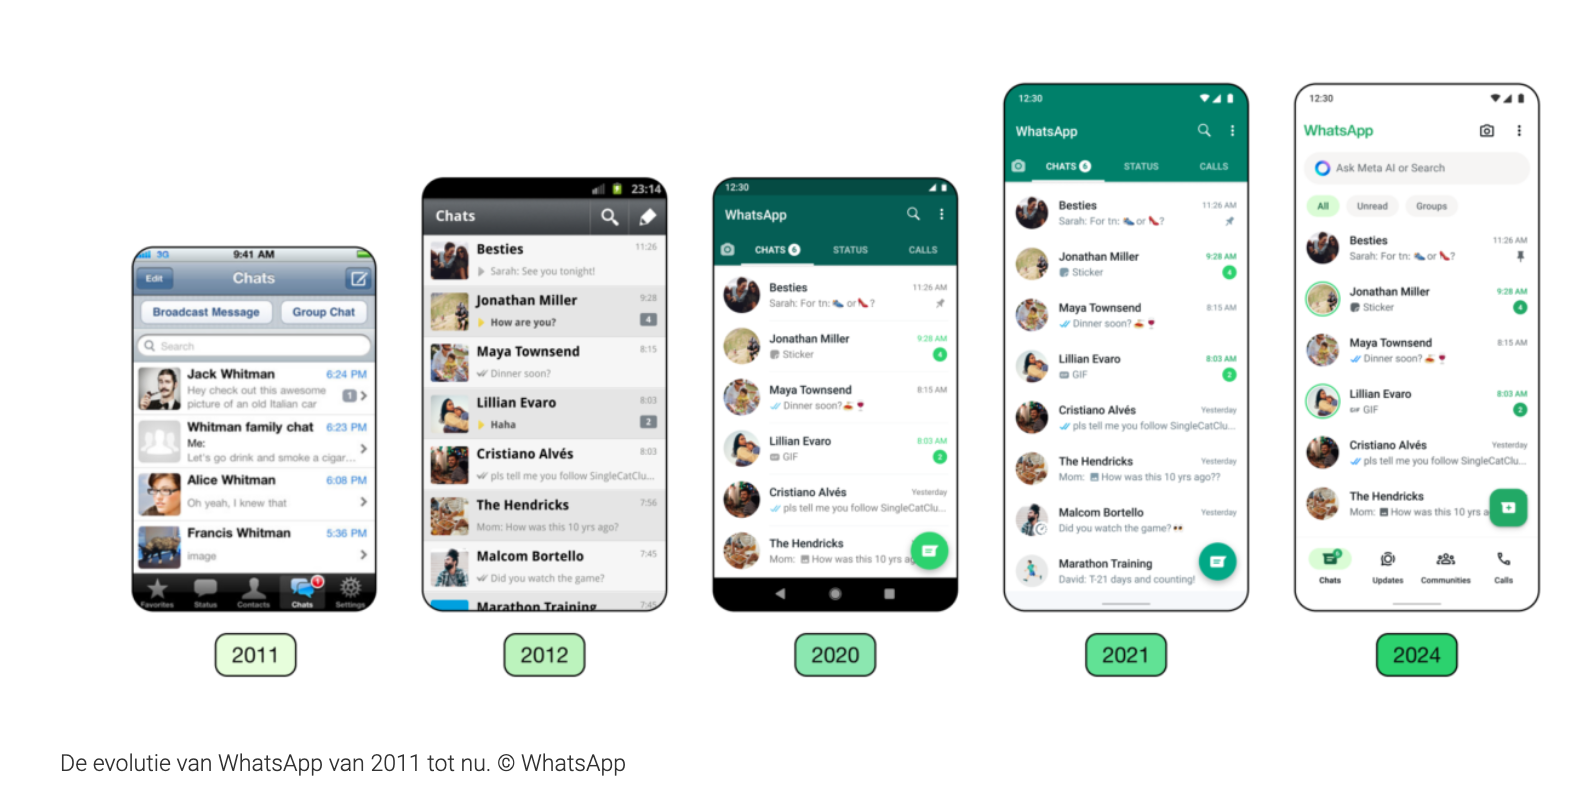 De evolutie van WhatsApp